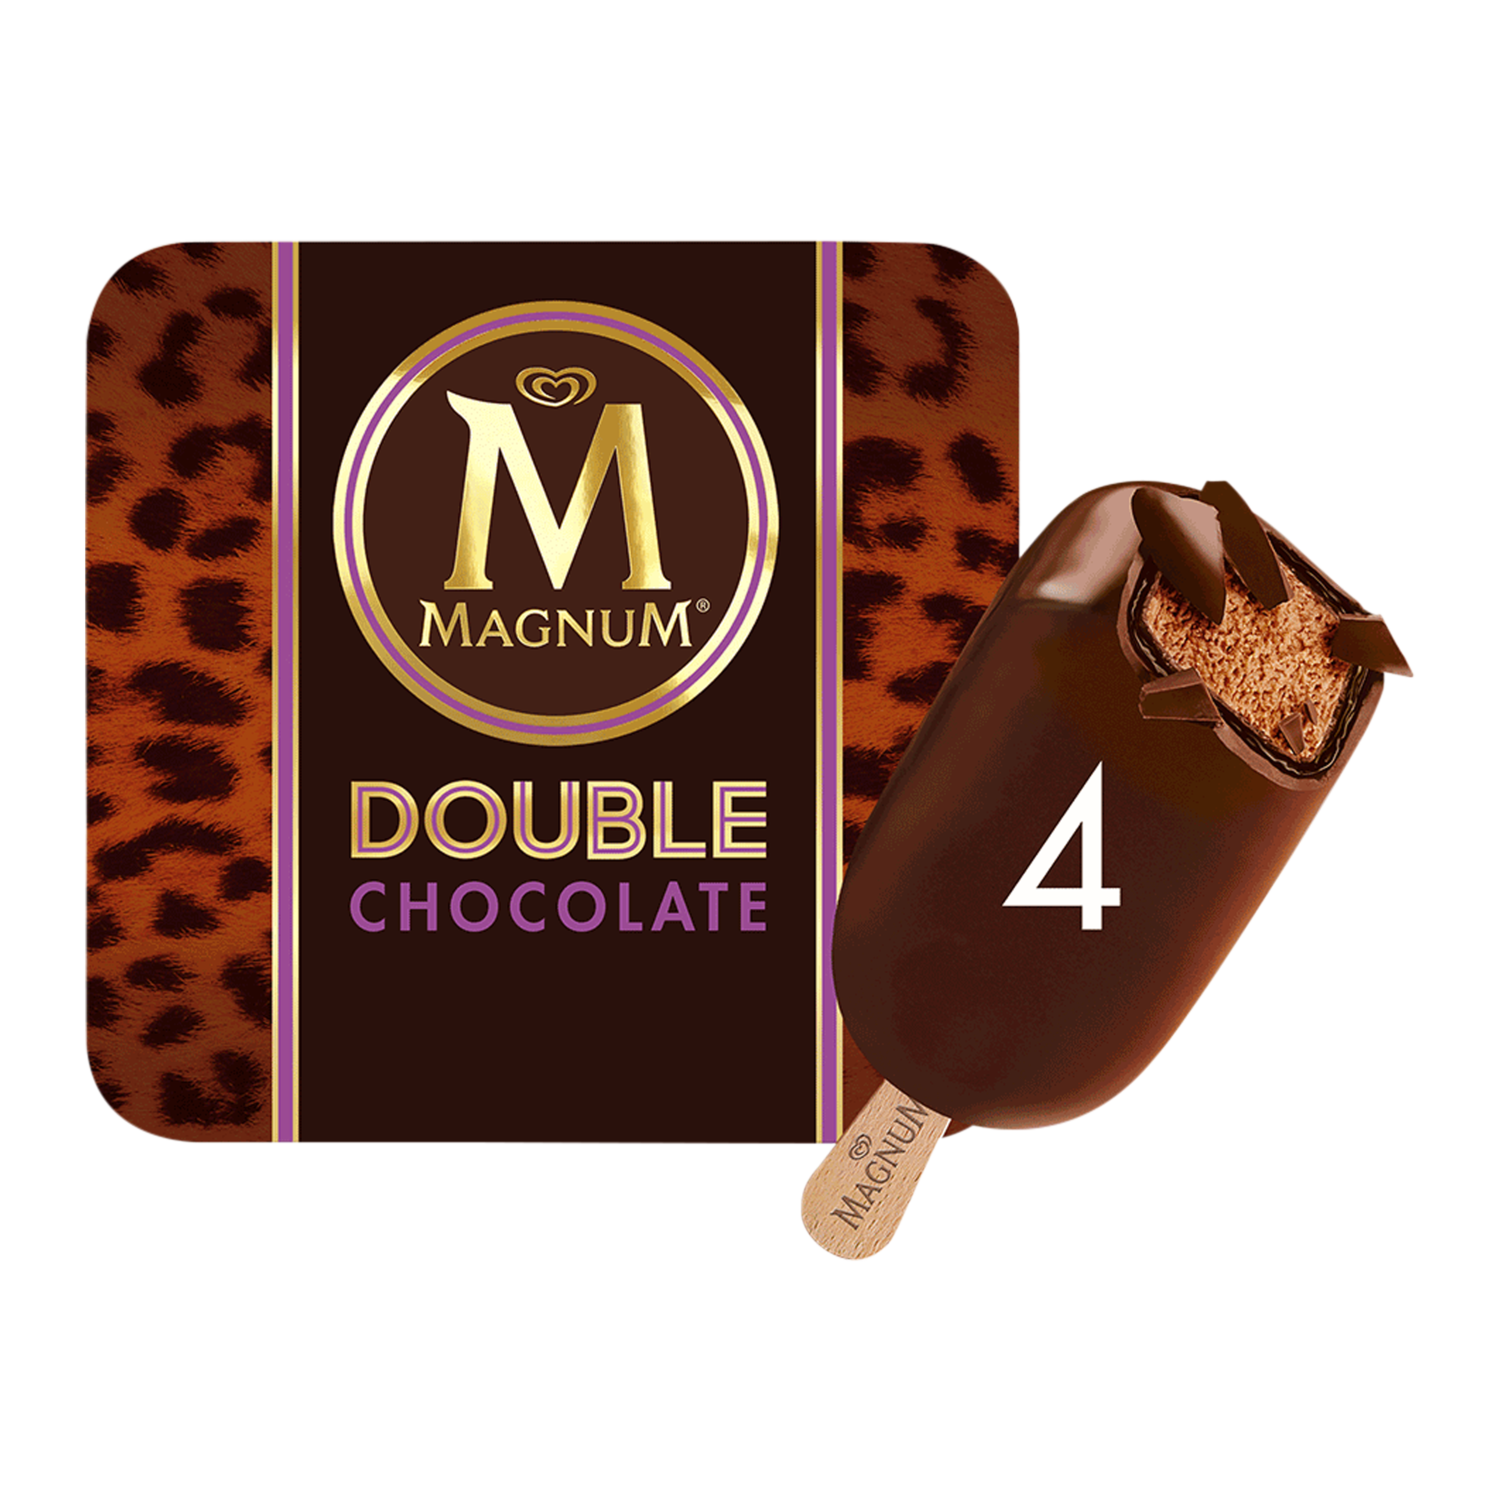 Magnum Chocolate Ice Cream Transparent Images